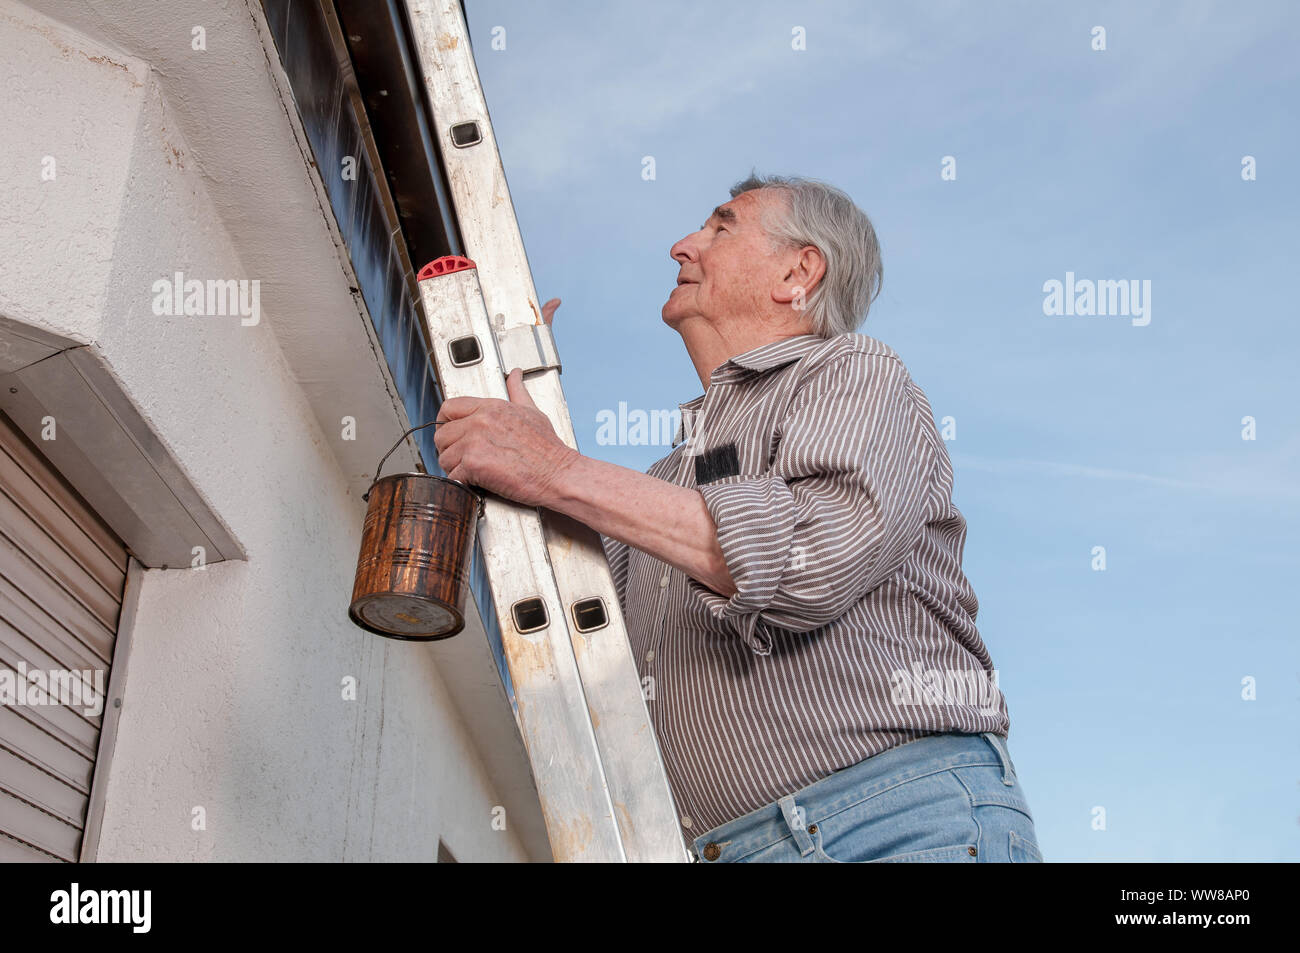 Senior climbing up a dangerous ladder Stock Photo